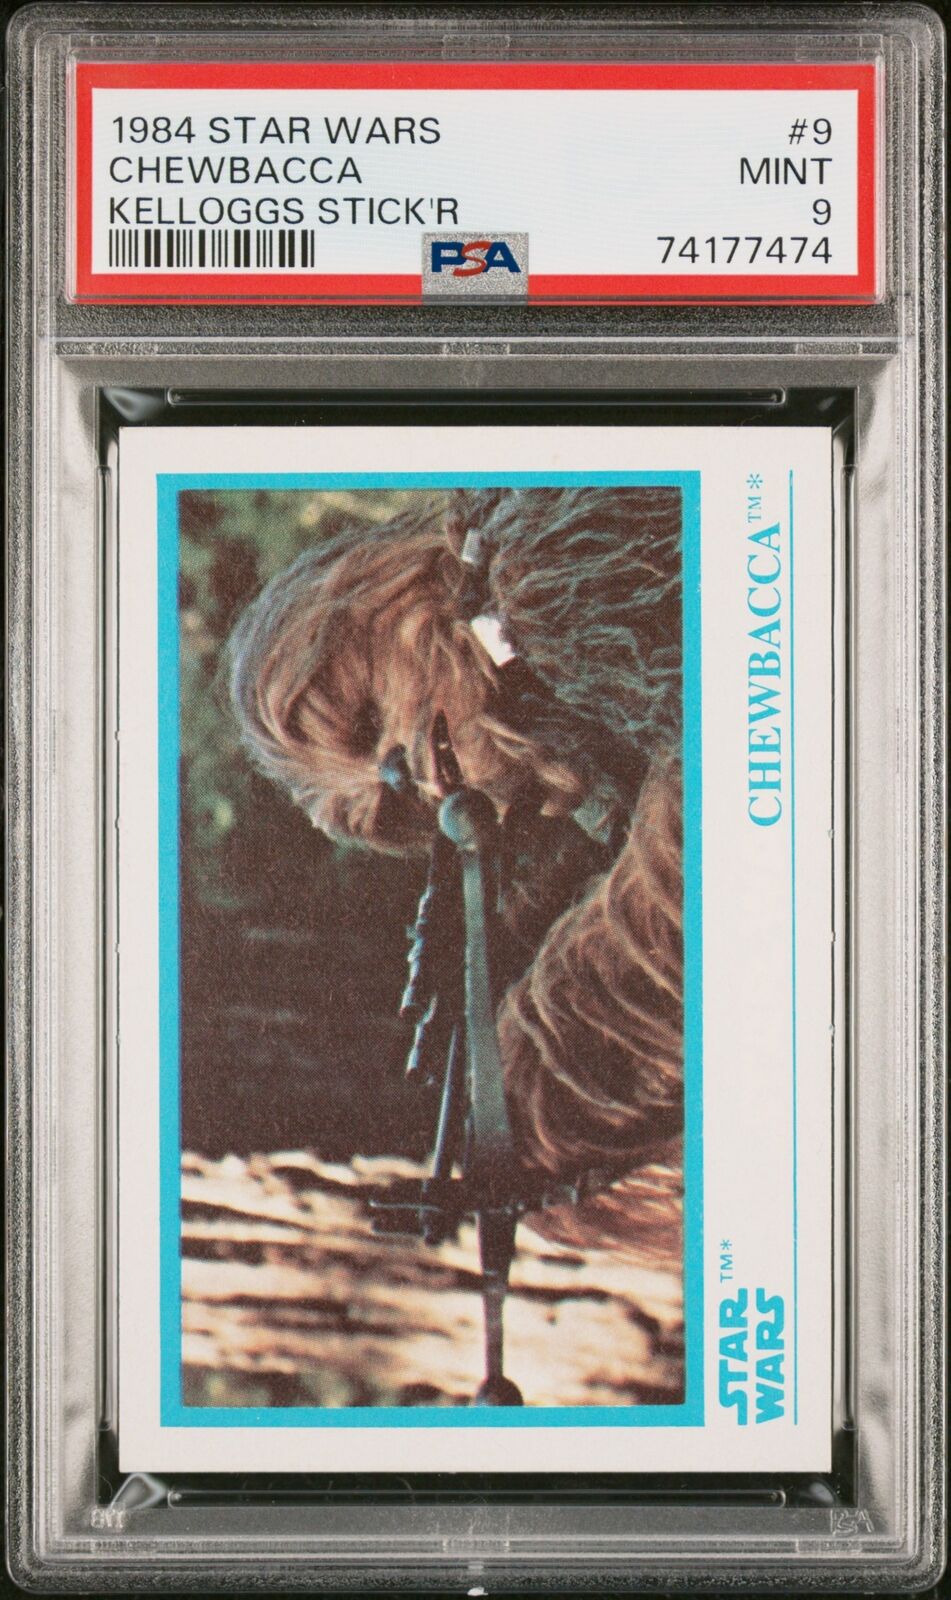 1984 Star Wars Kelloggs Stick\'R Chewbacca #9 PSA 9 Mint Low Pop